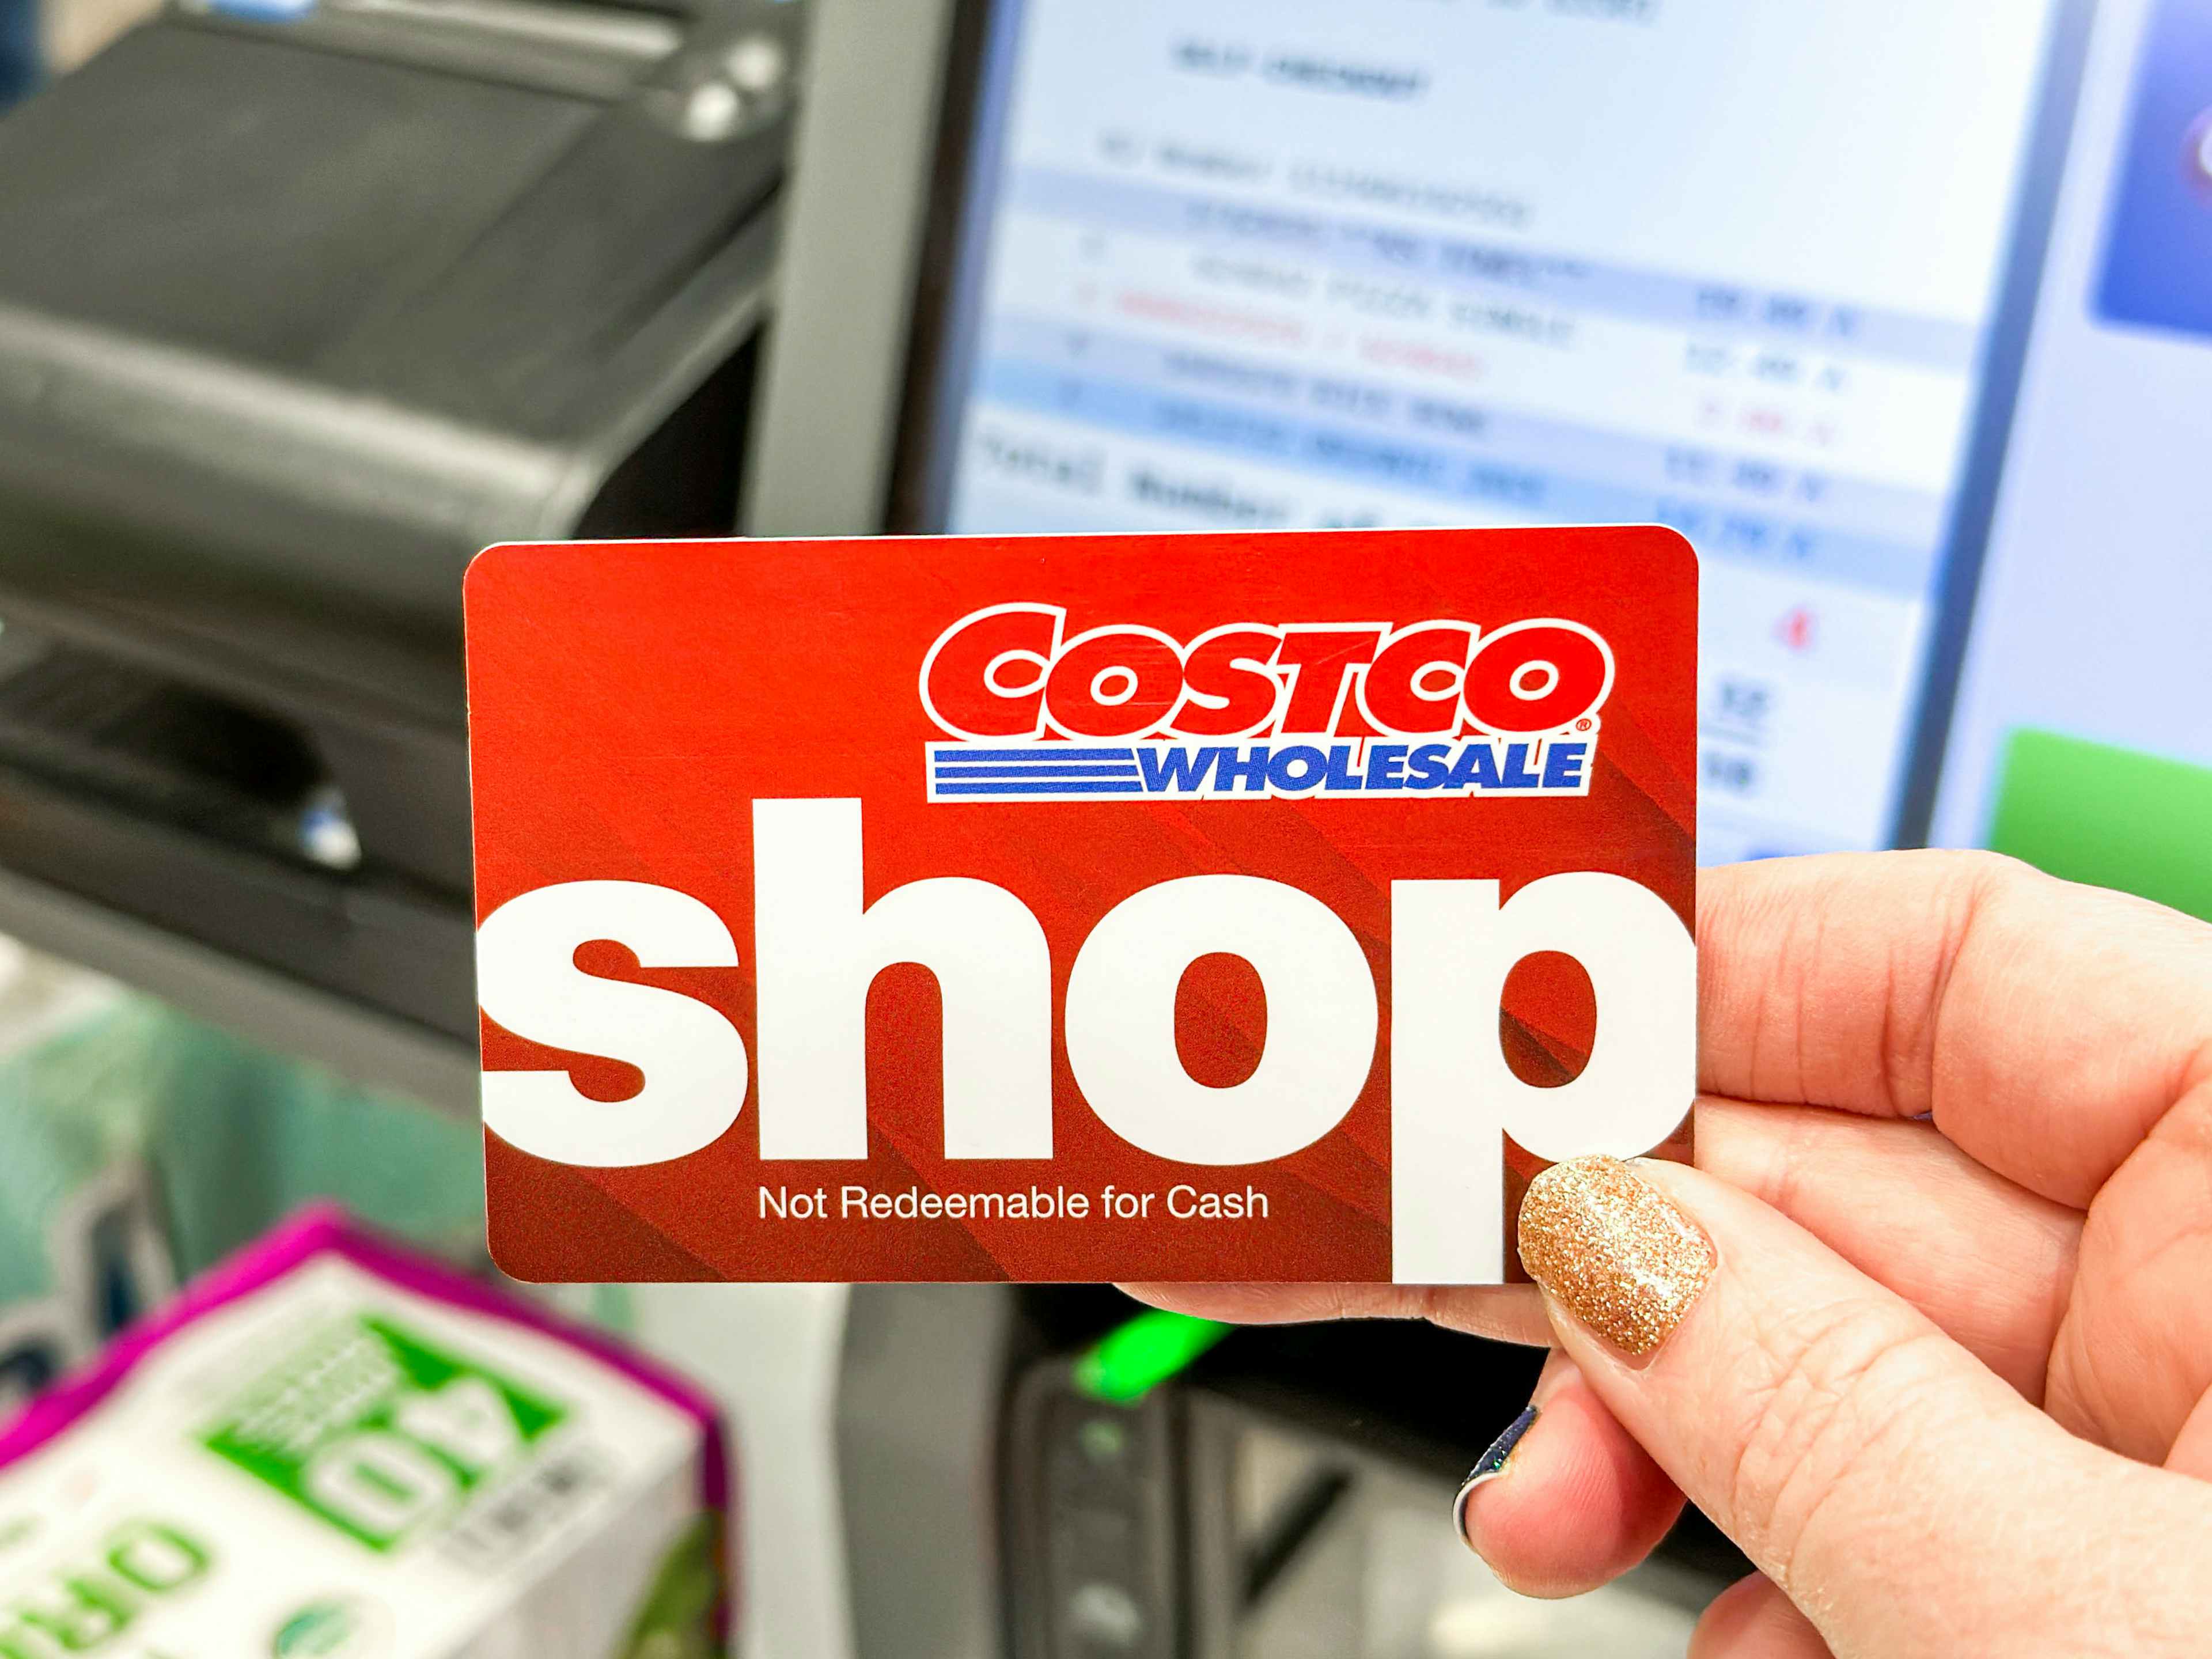 costco-wholesale-shop-card-checkout-kcl-37